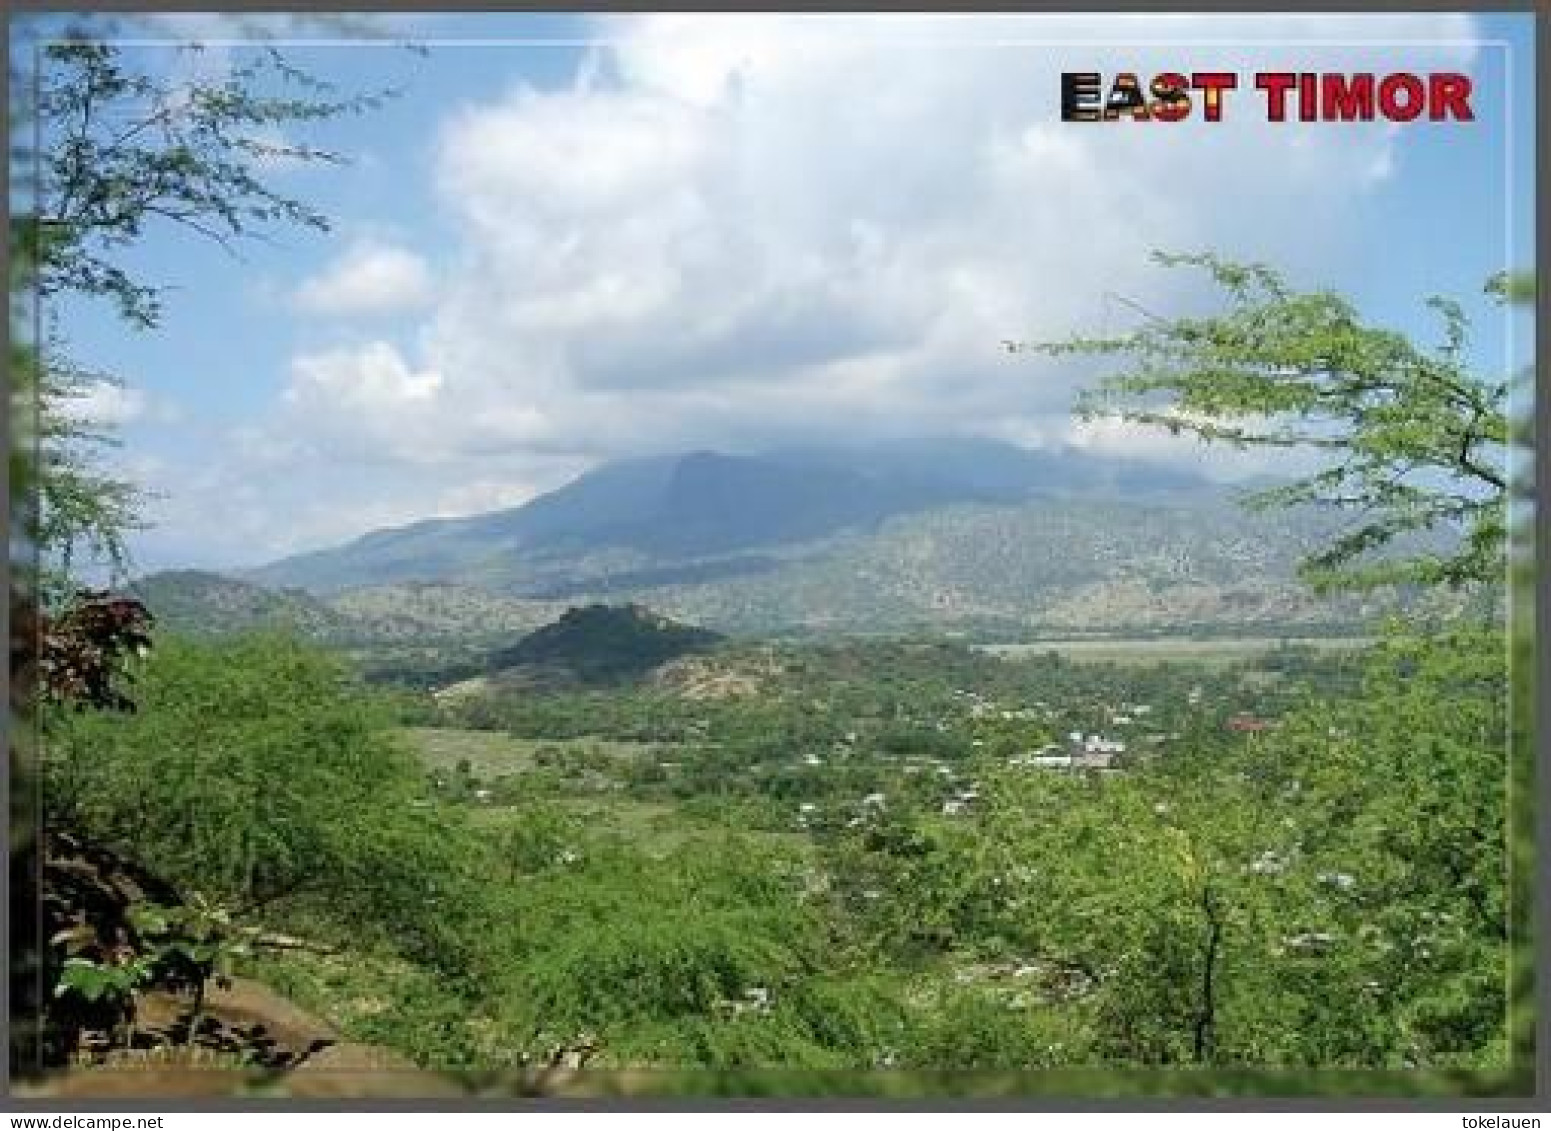 East Timor Timor Leste Loro Sae South East Asia - East Timor